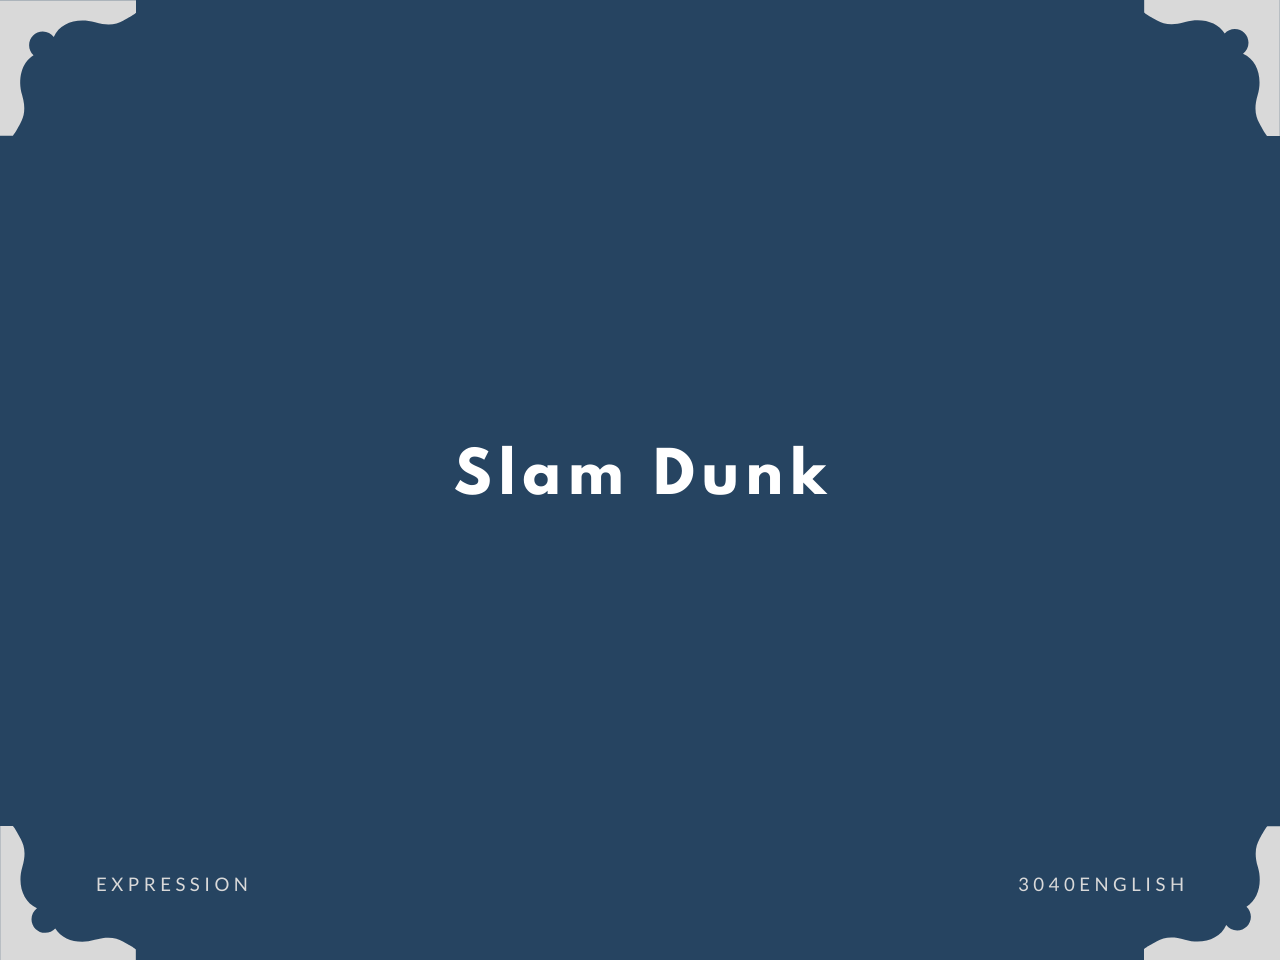 スラムダンクだけじゃない Slam Dunk の意味 例文 英語表現